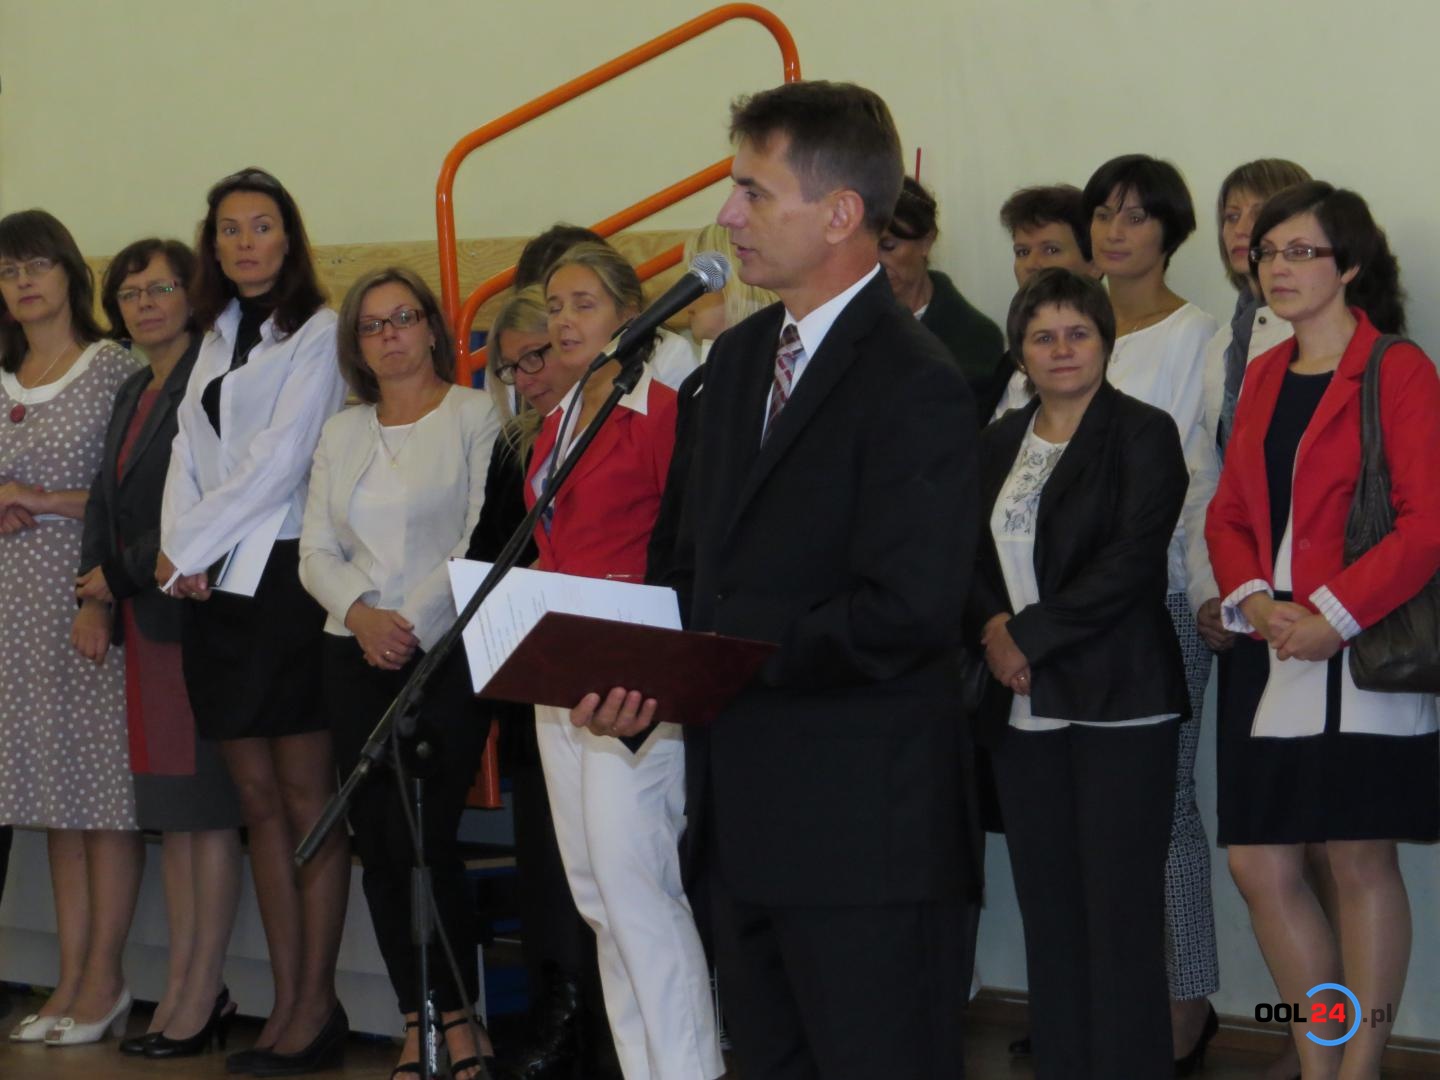 Rozpoczęcie roku szkolnego 2013/2014 w Zespole Szkół w Oleśnie